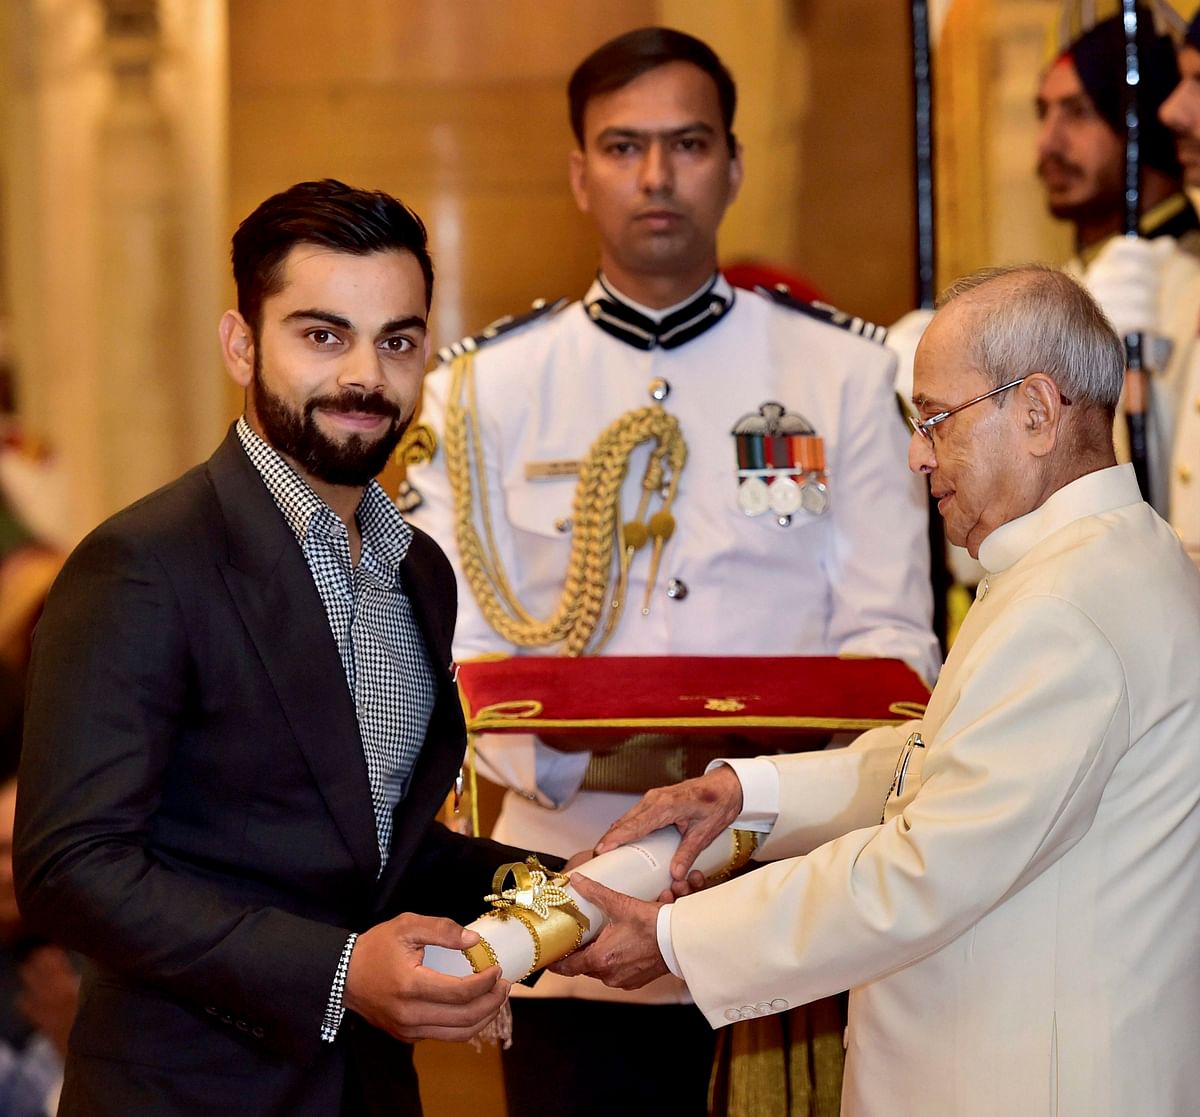 विराट कोहली को भारत का चौथे सर्वोच्च नागरिक सम्मान पद्म श्री से सम्मानित किया गया